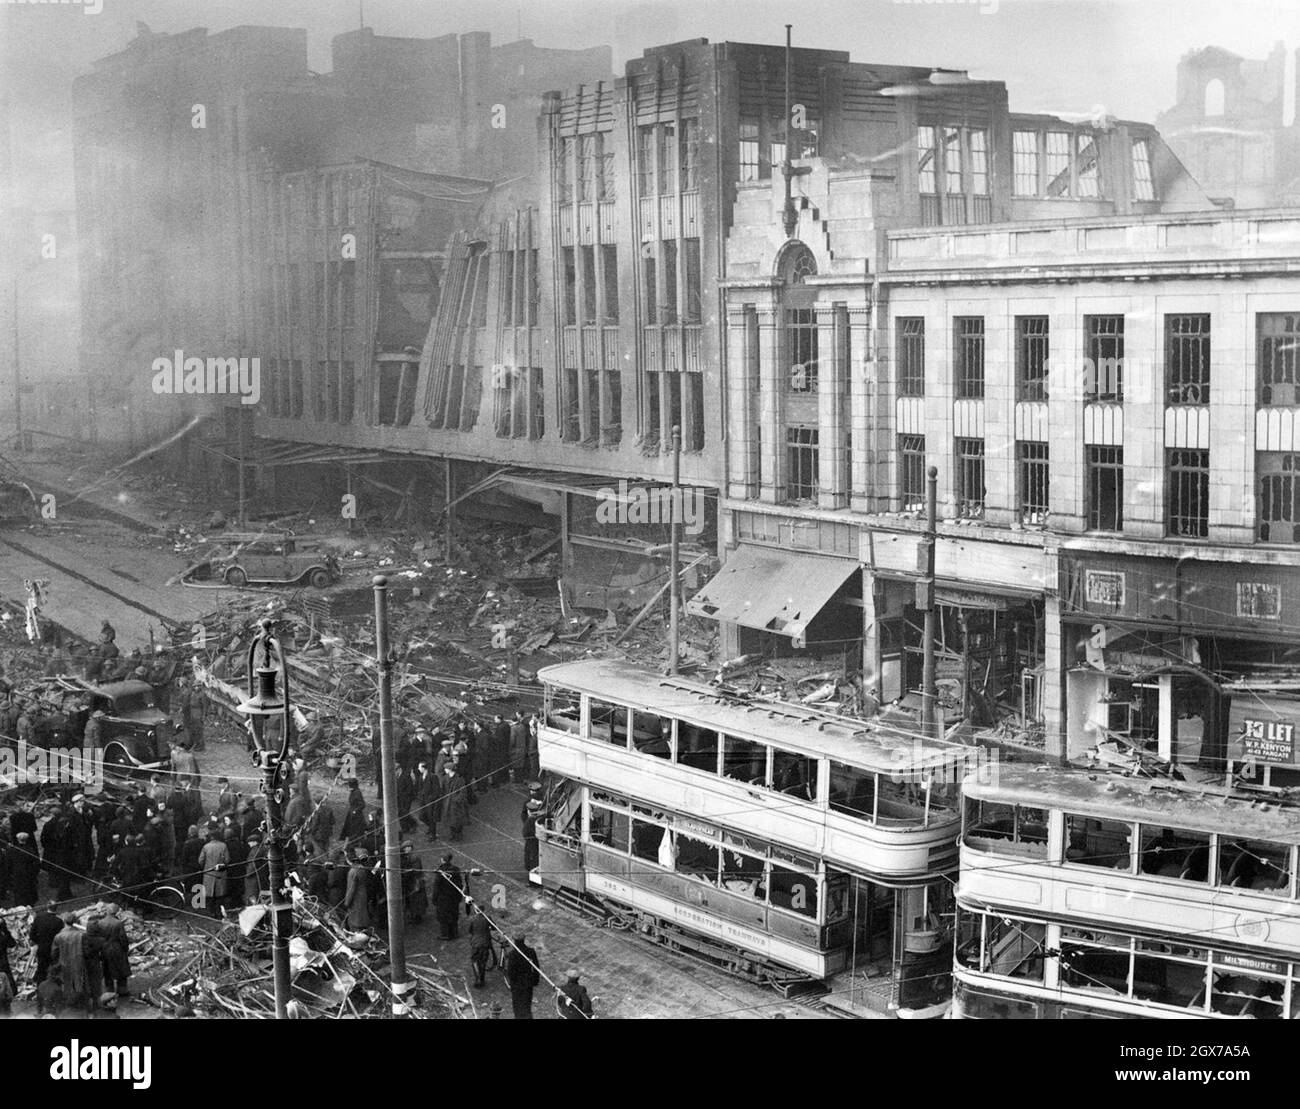 Attentats à la bombe dans le centre-ville de Sheffield pendant le Blitz, décembre 1940 Banque D'Images